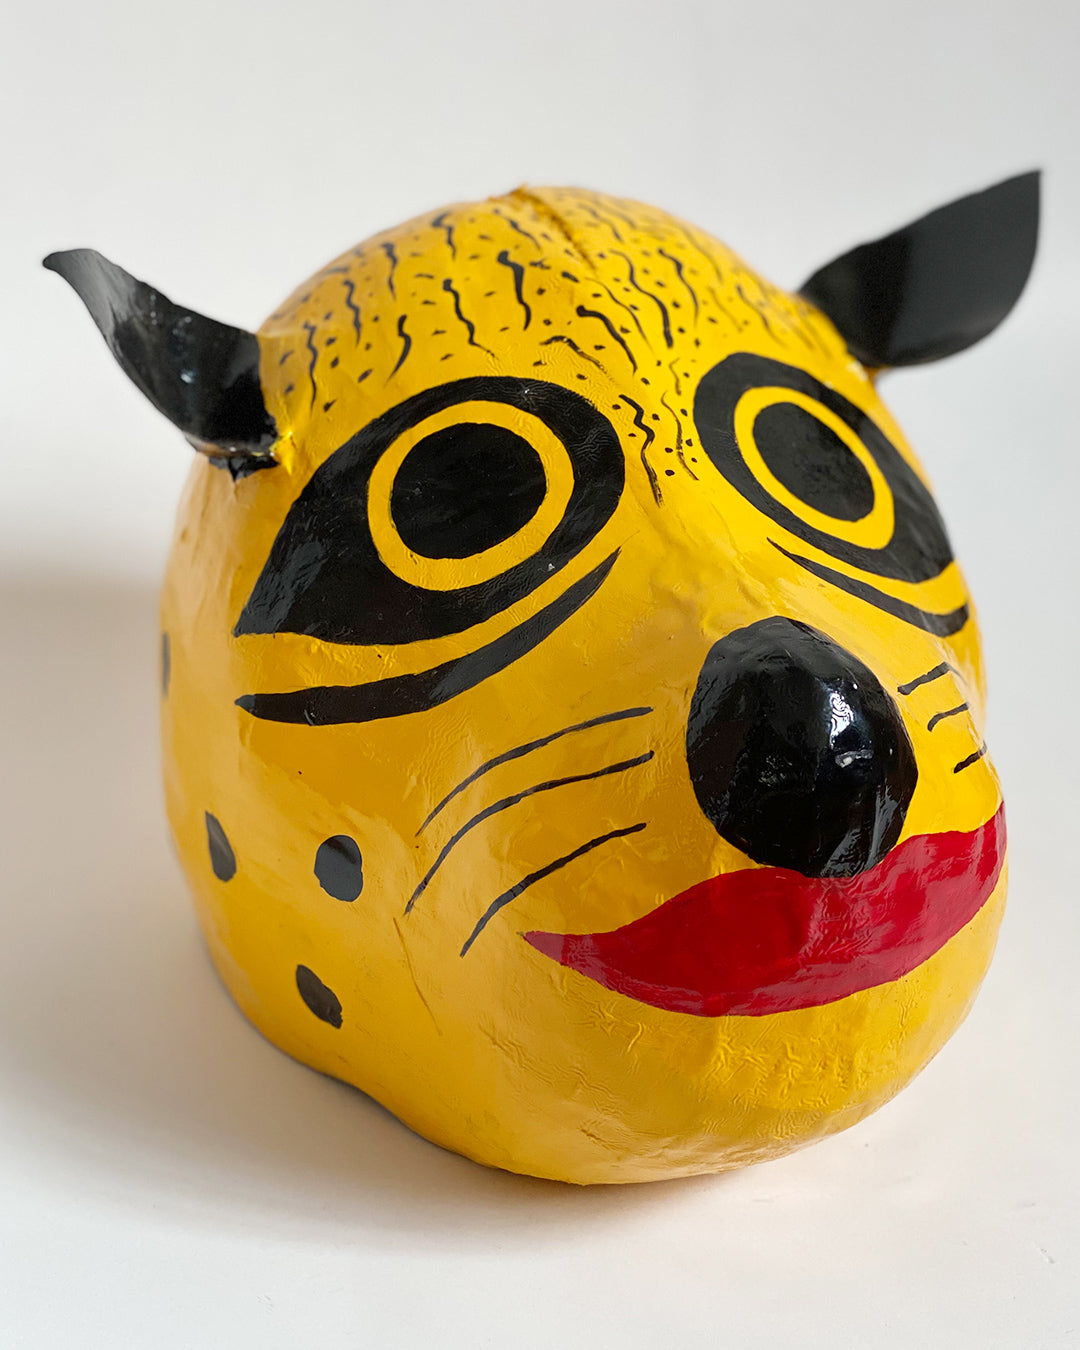 Máscara de onça – grande (amarela, vermelha, preta)